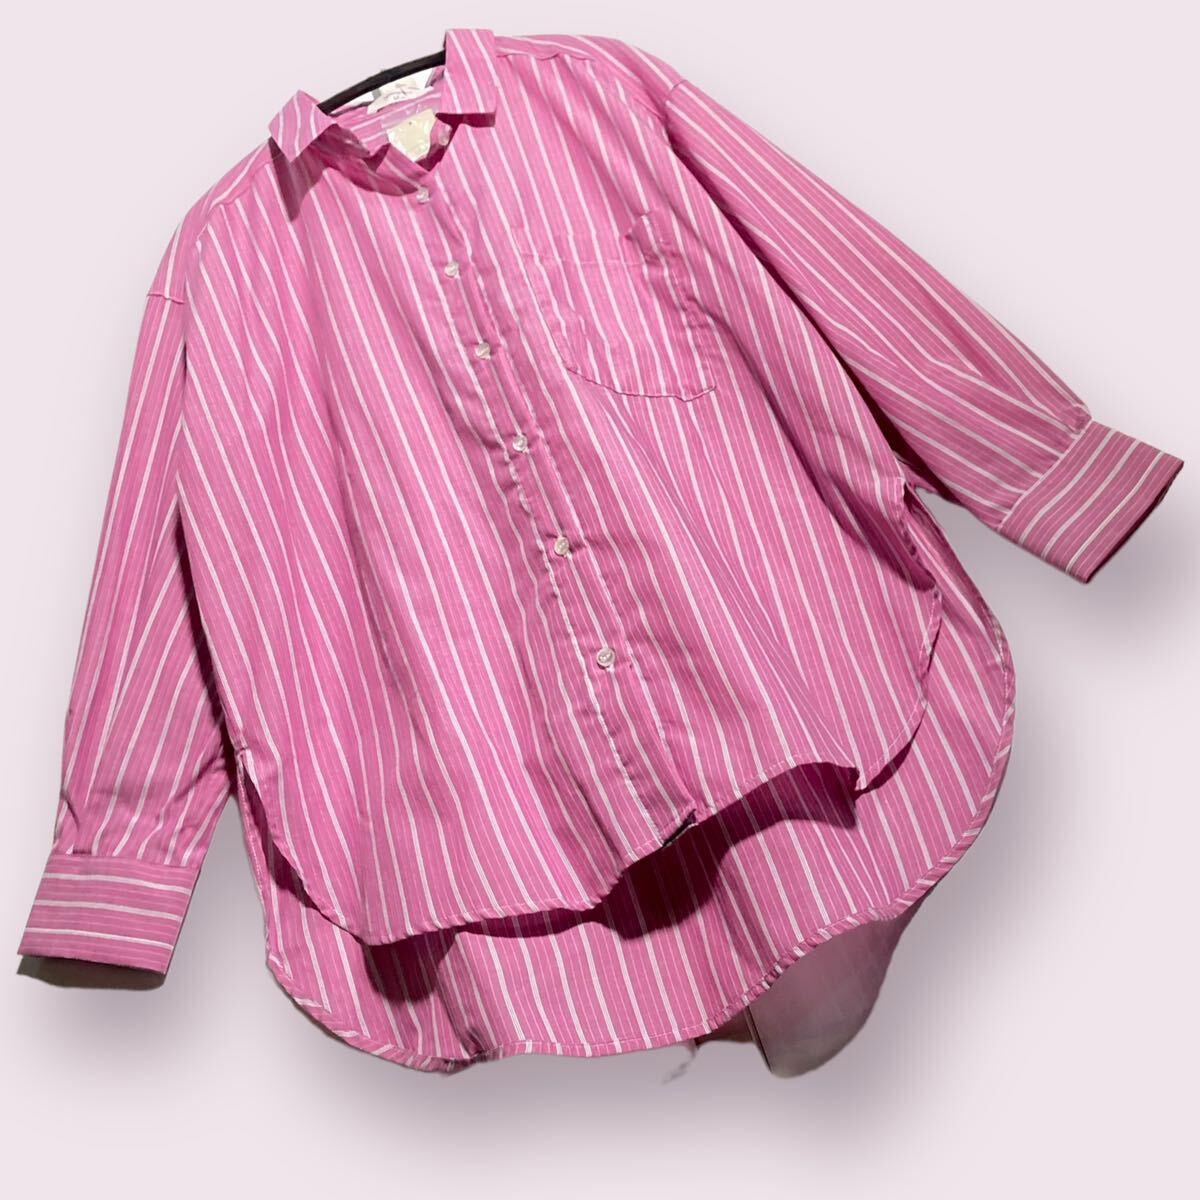 サマンサモスモスブルー　新品未使用　ストライプ　長袖　ビッグシャツ　ピンク